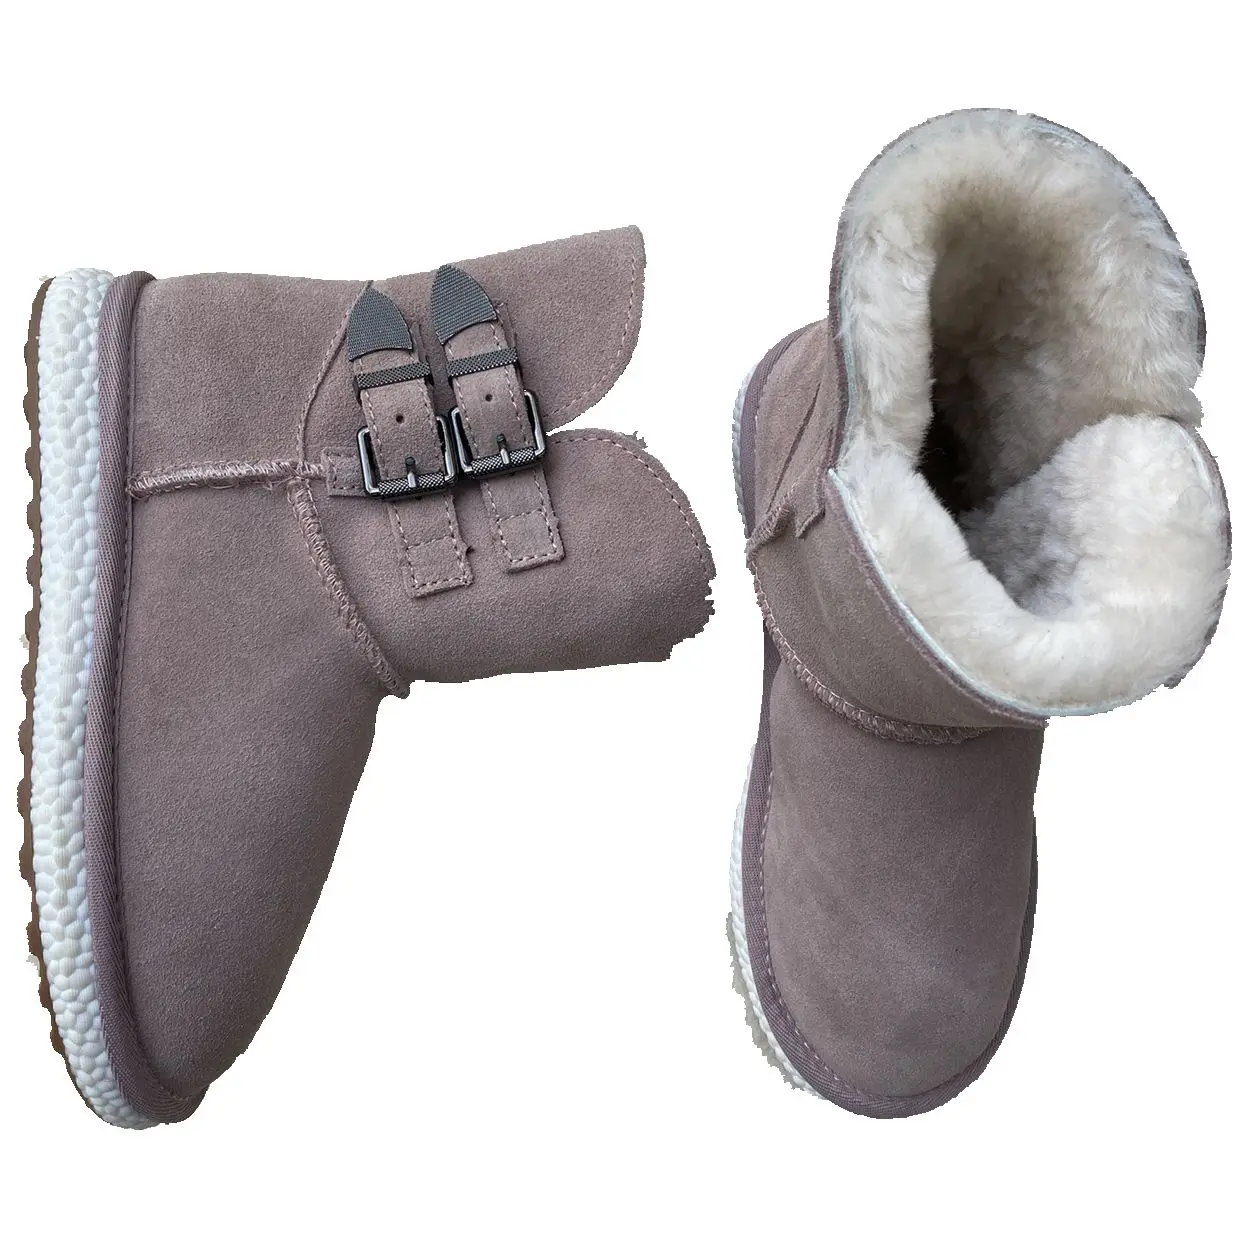 Оптовая продажа, женские универсальные зимние сапоги из натуральной шерсти, уютная обувь